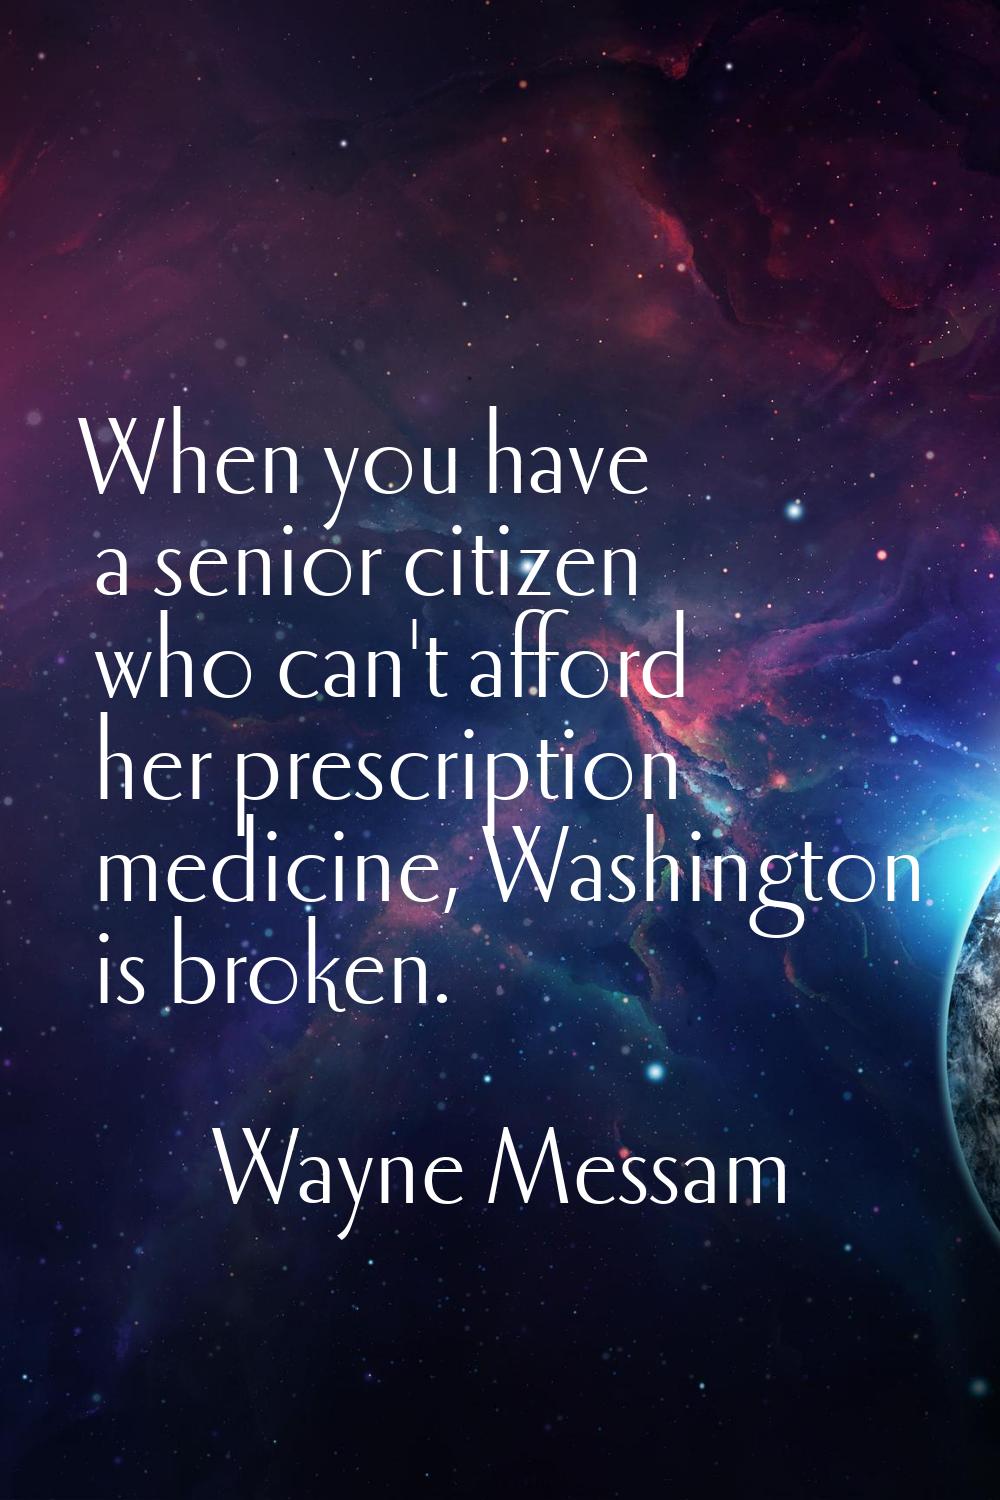 When you have a senior citizen who can't afford her prescription medicine, Washington is broken.